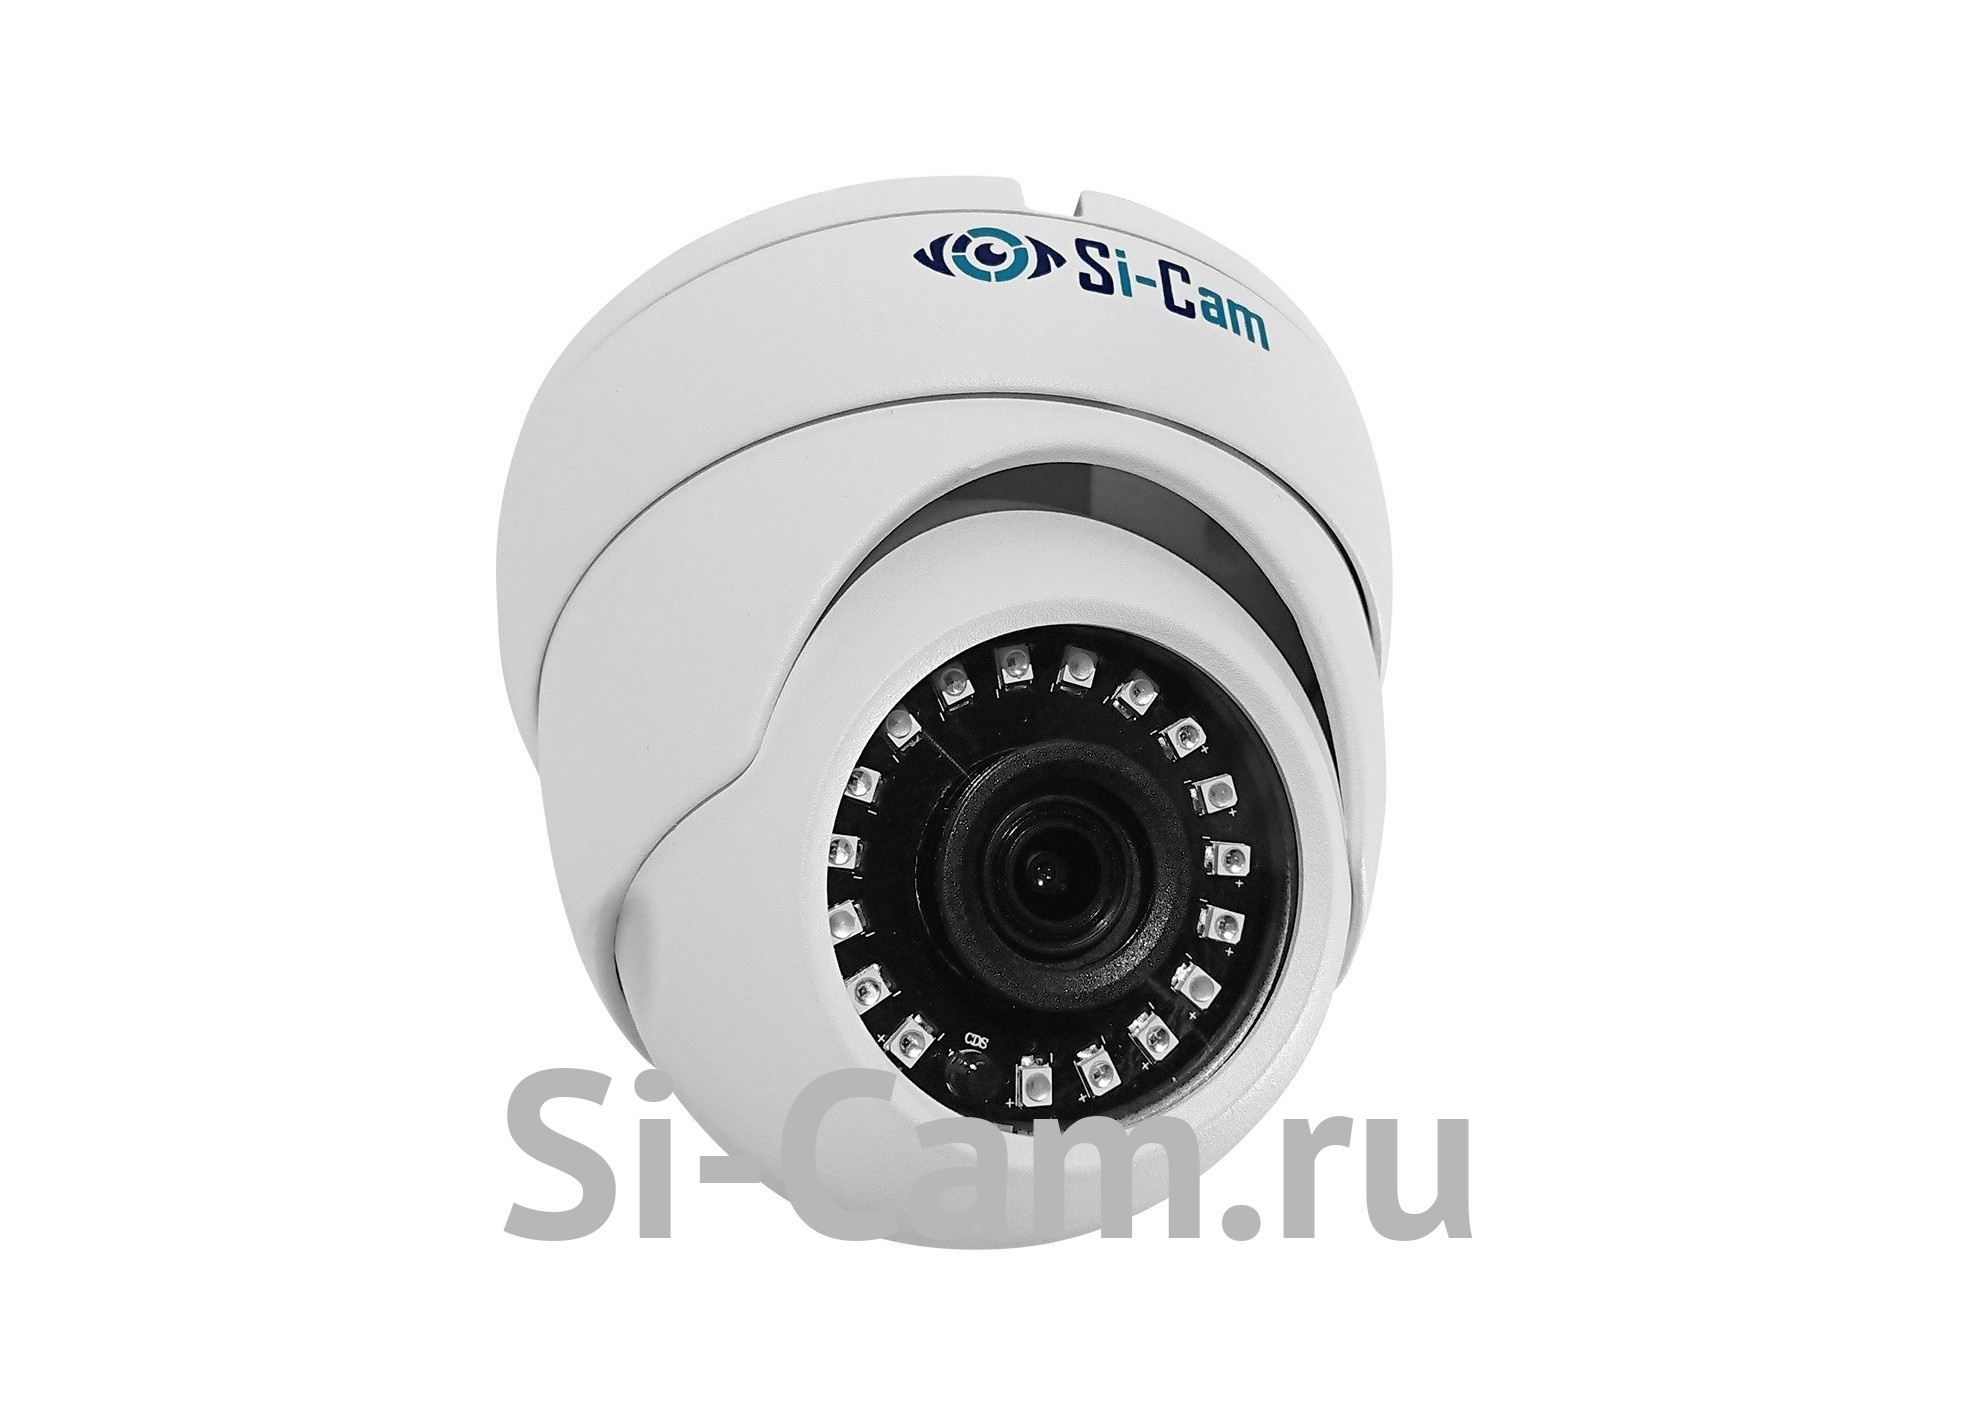 Si-Cam SC-DSW202F IR Купольная уличная антивандальная IP видеокамера 